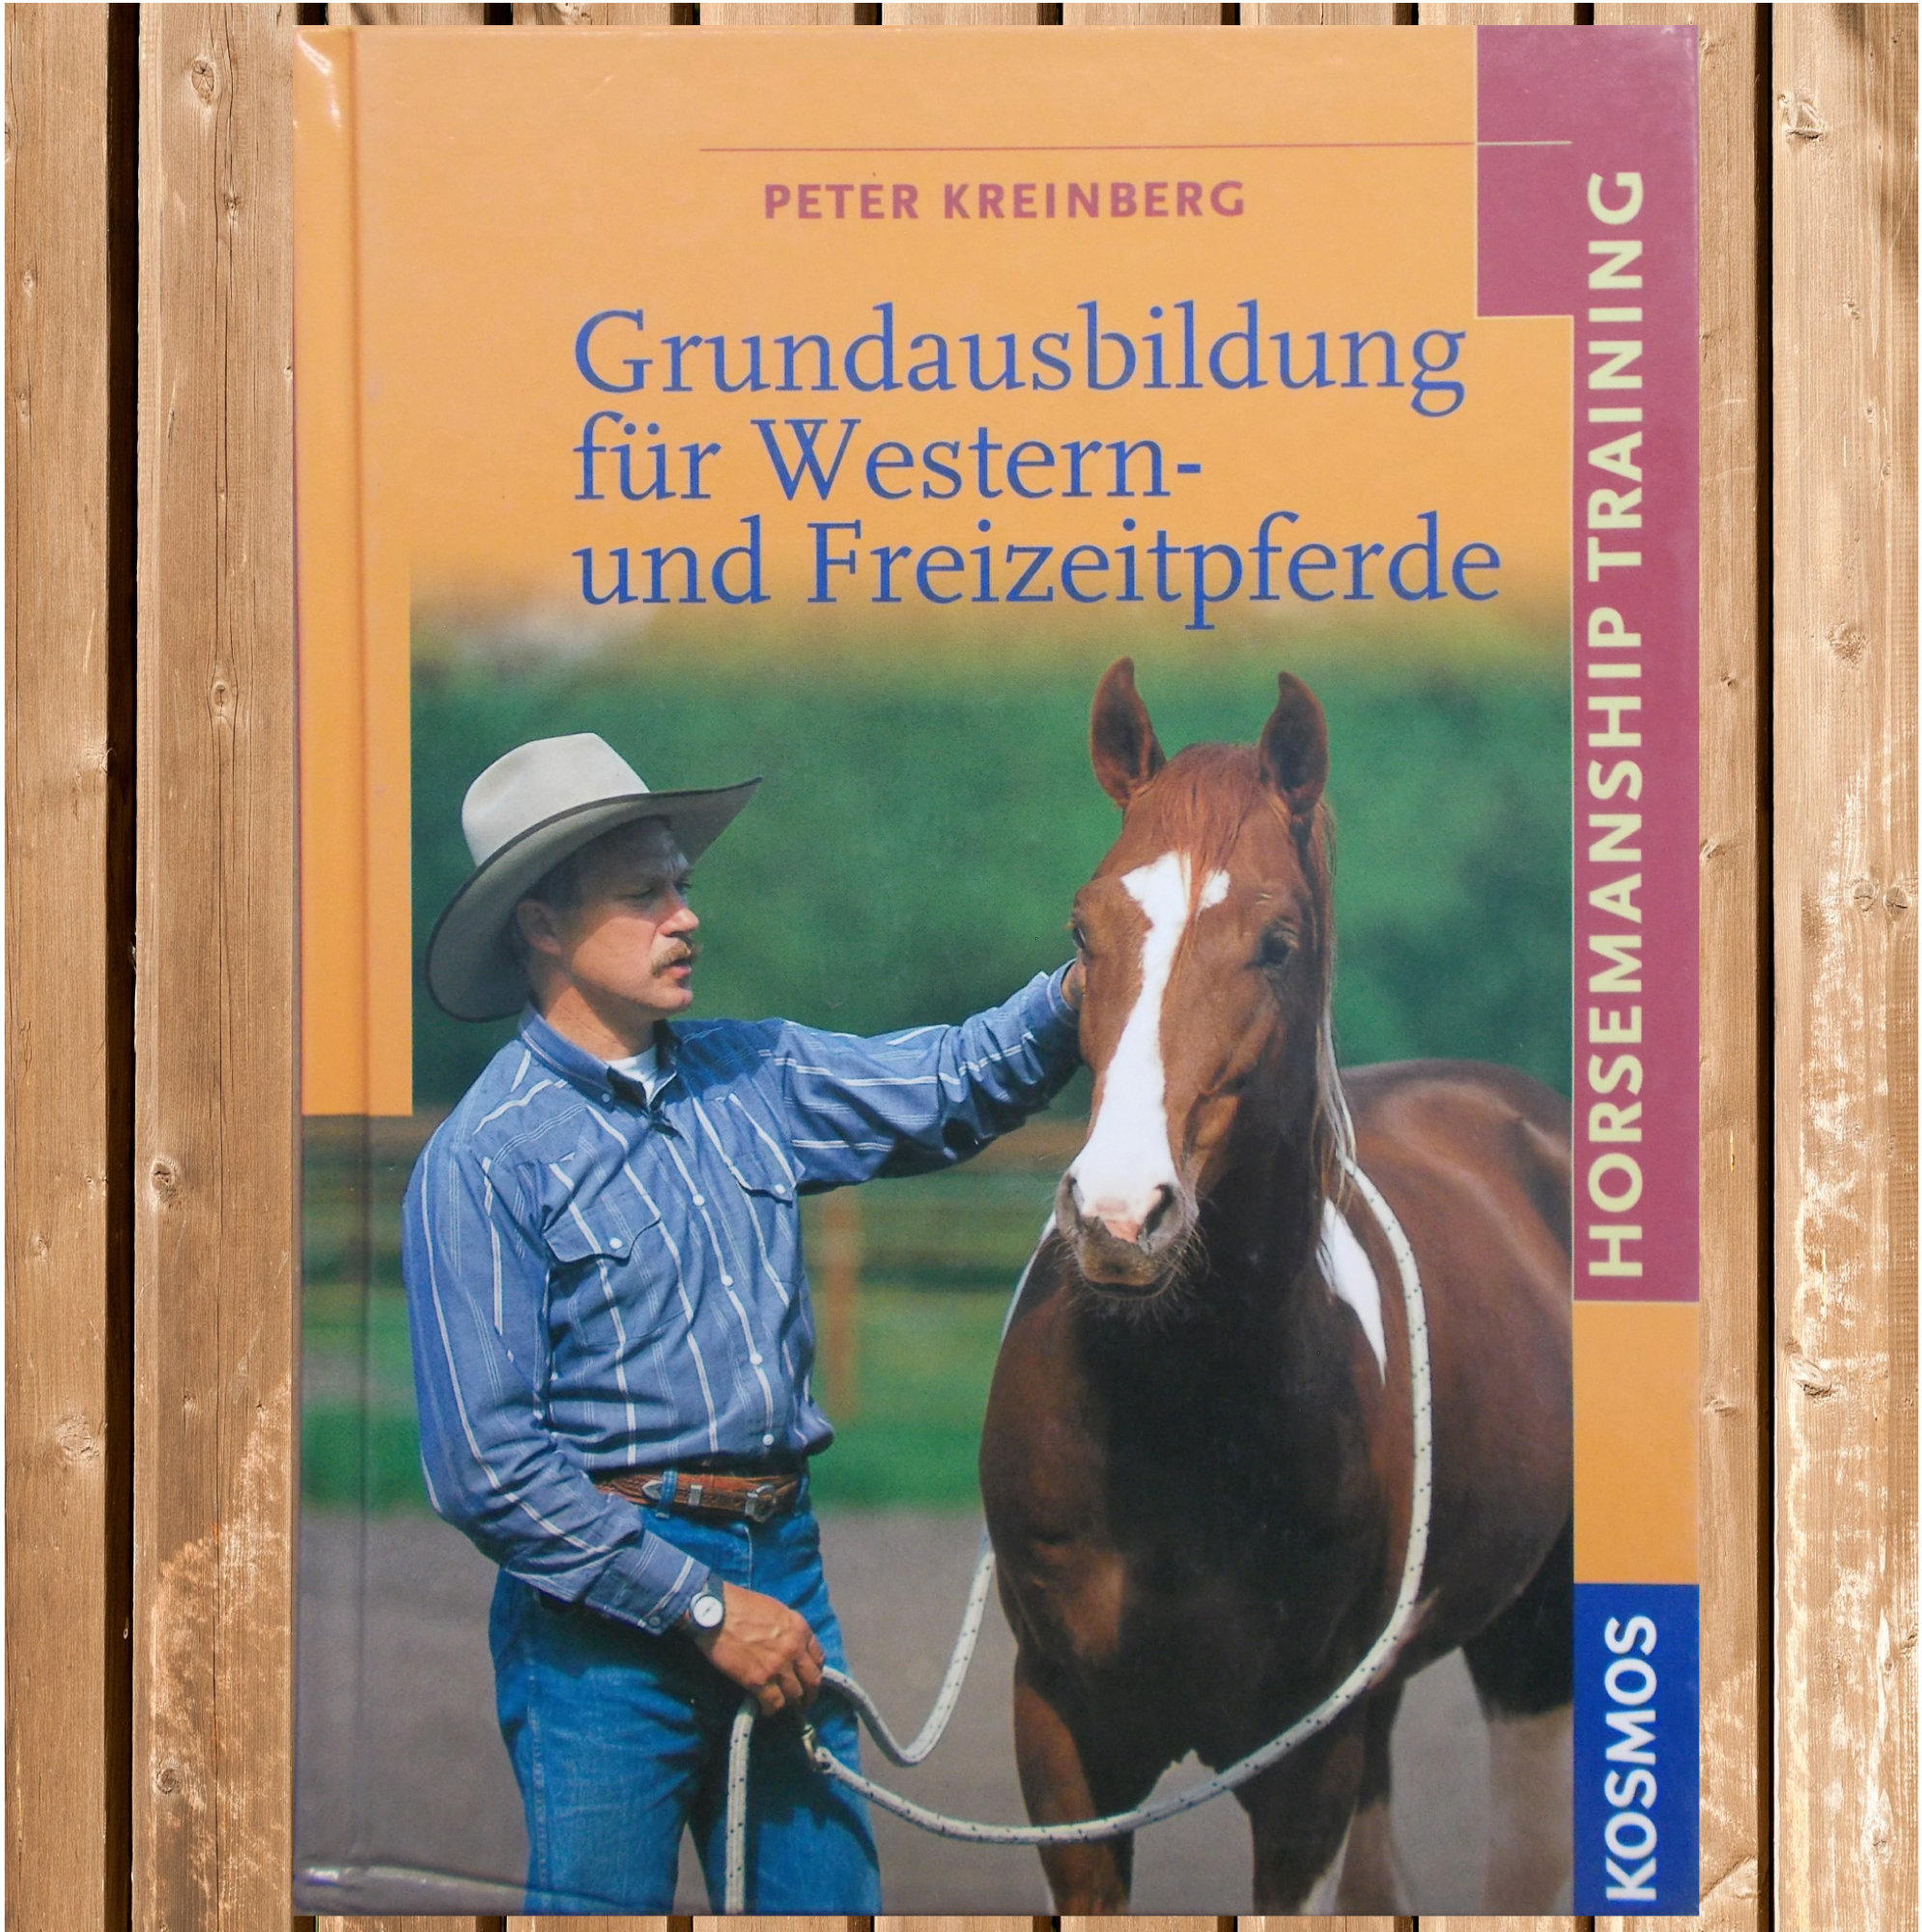 Grundausbildung für Western- und Freizeitpferde, Horsemanship